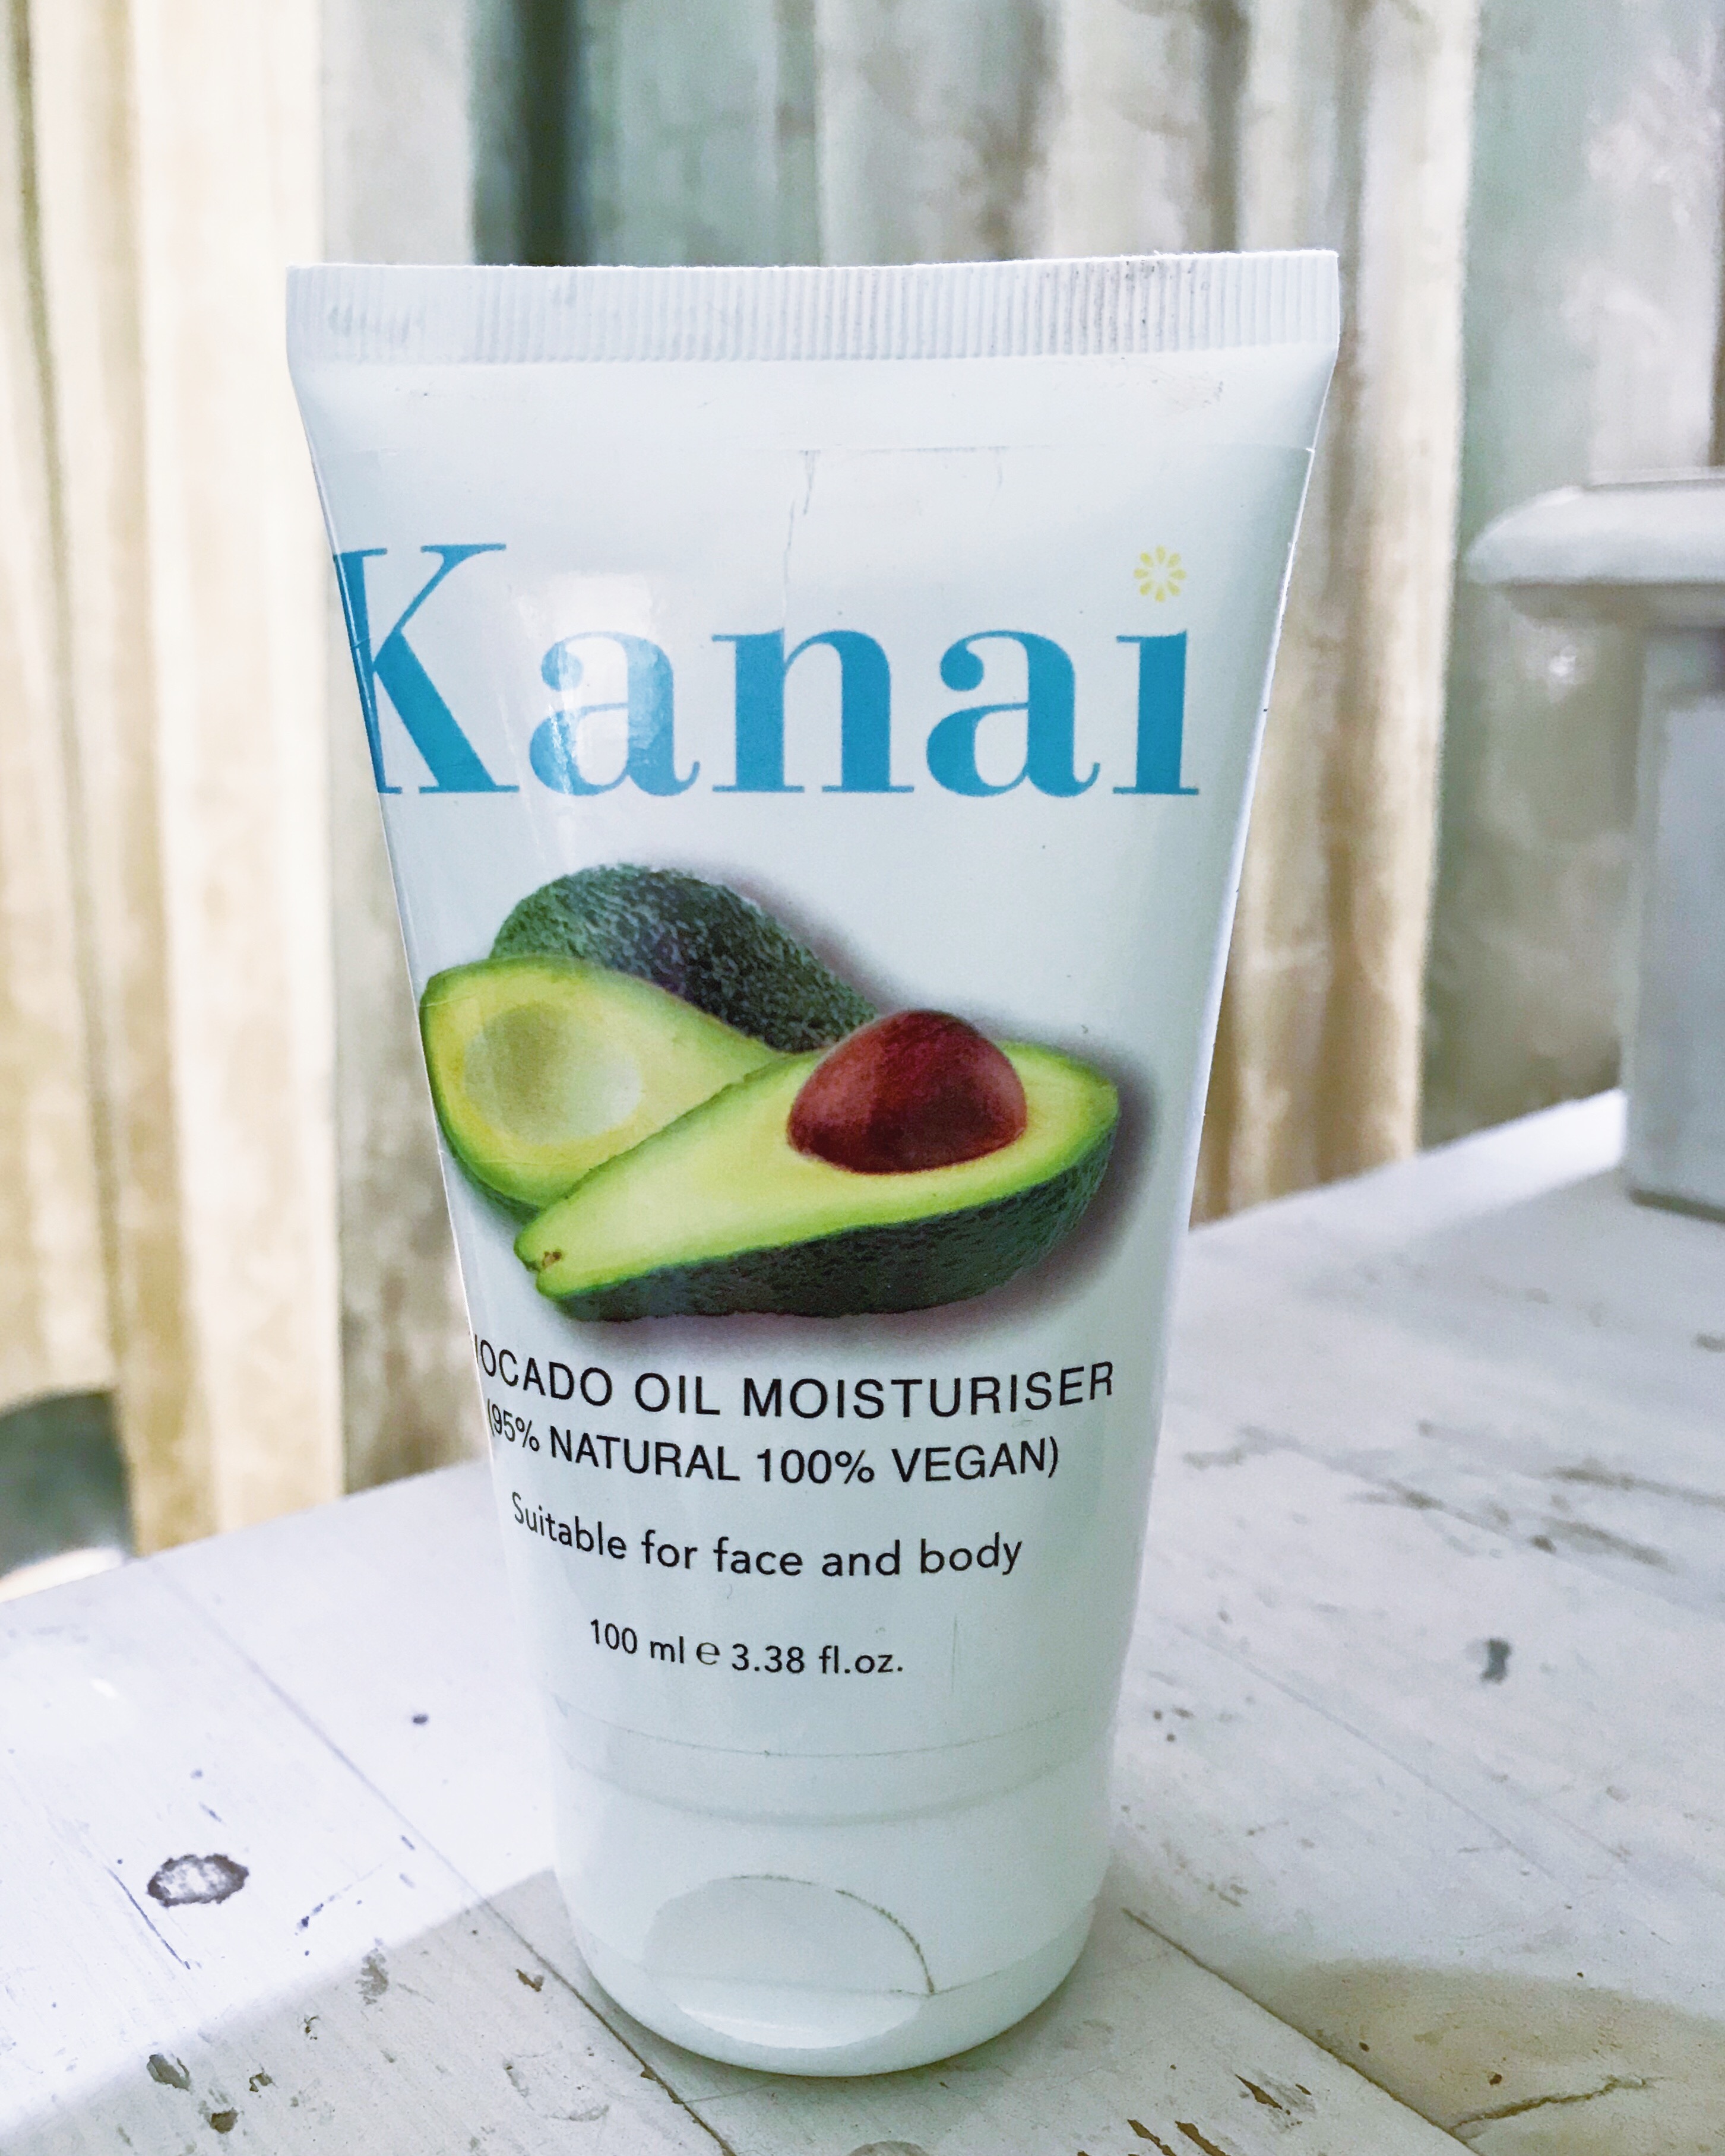 Kanai avocado moisturizer